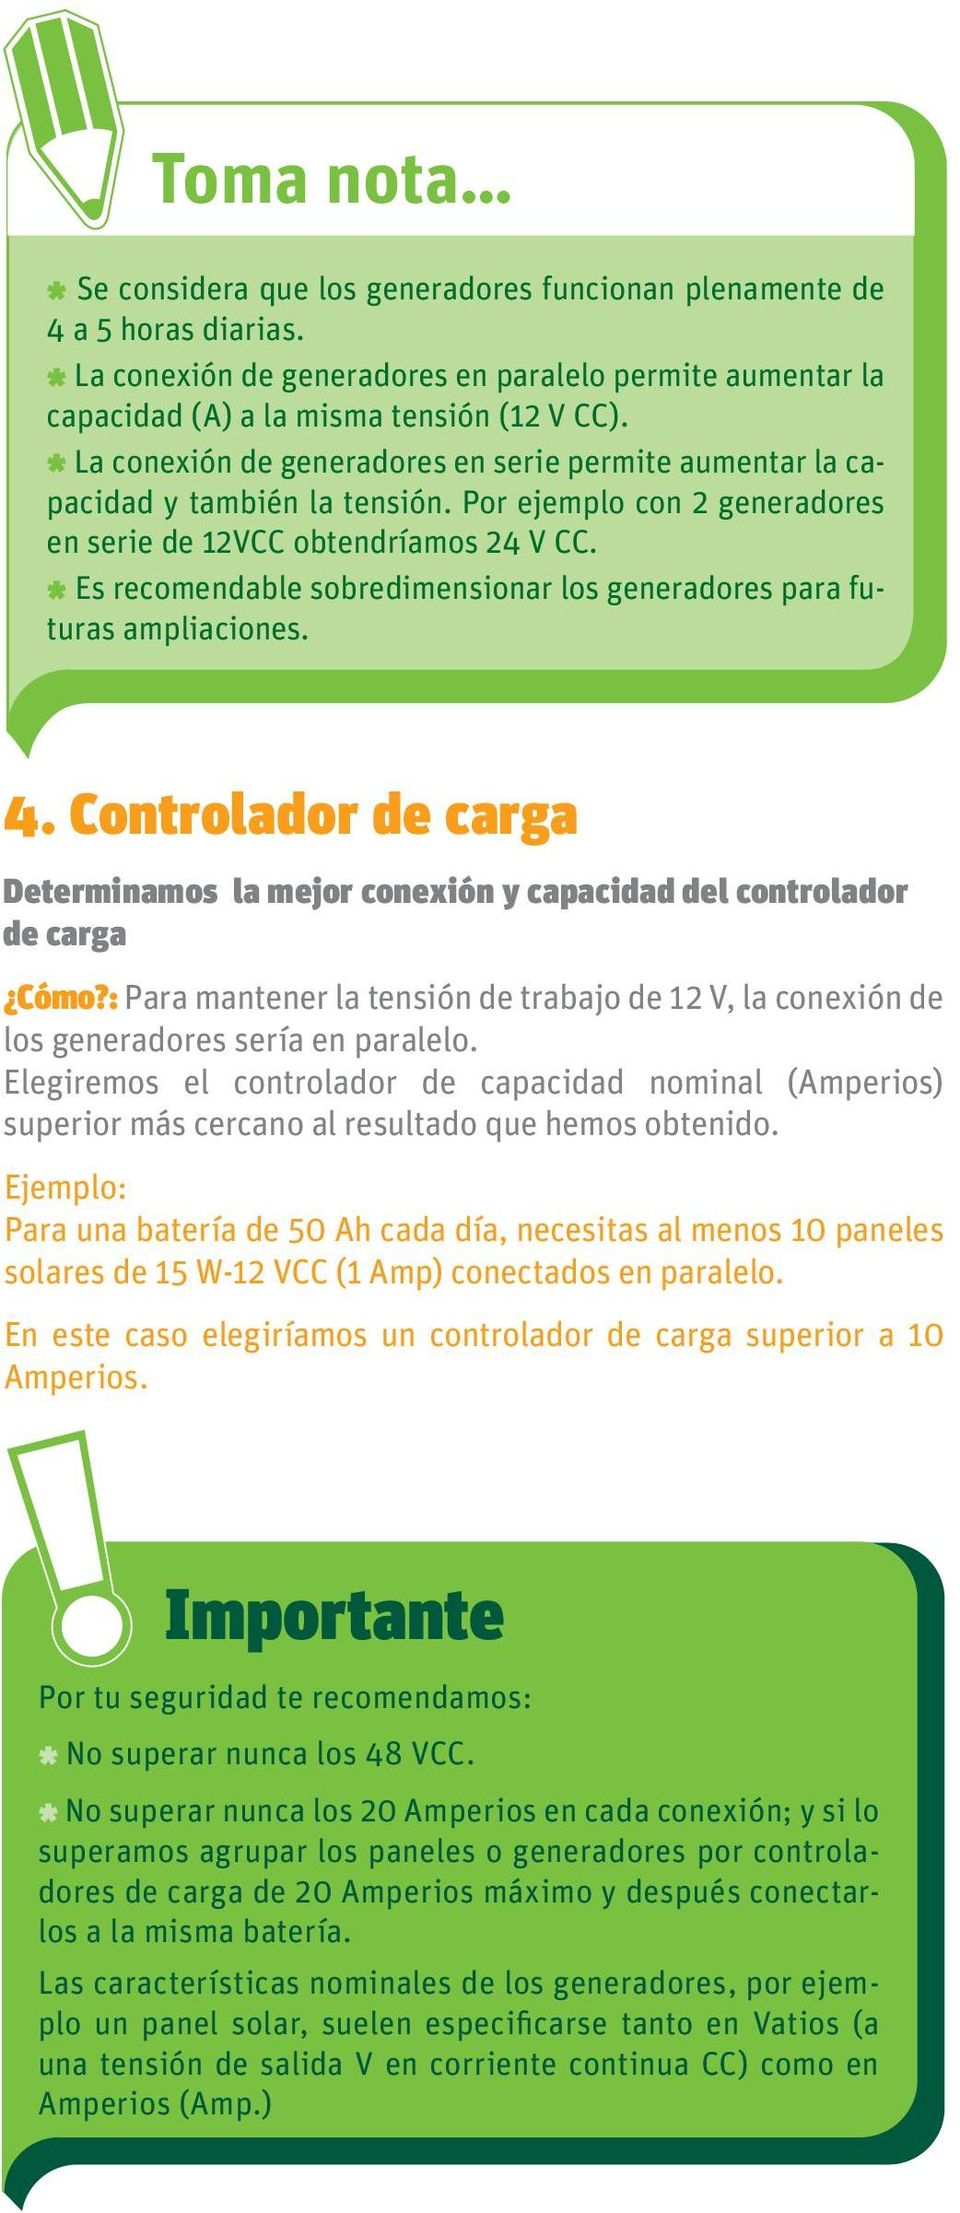 * Es recomendable sobredimensionar los generadores para futuras ampliaciones. 4. Controlador de carga Determinamos la mejor conexión y capacidad del controlador de carga Cómo?